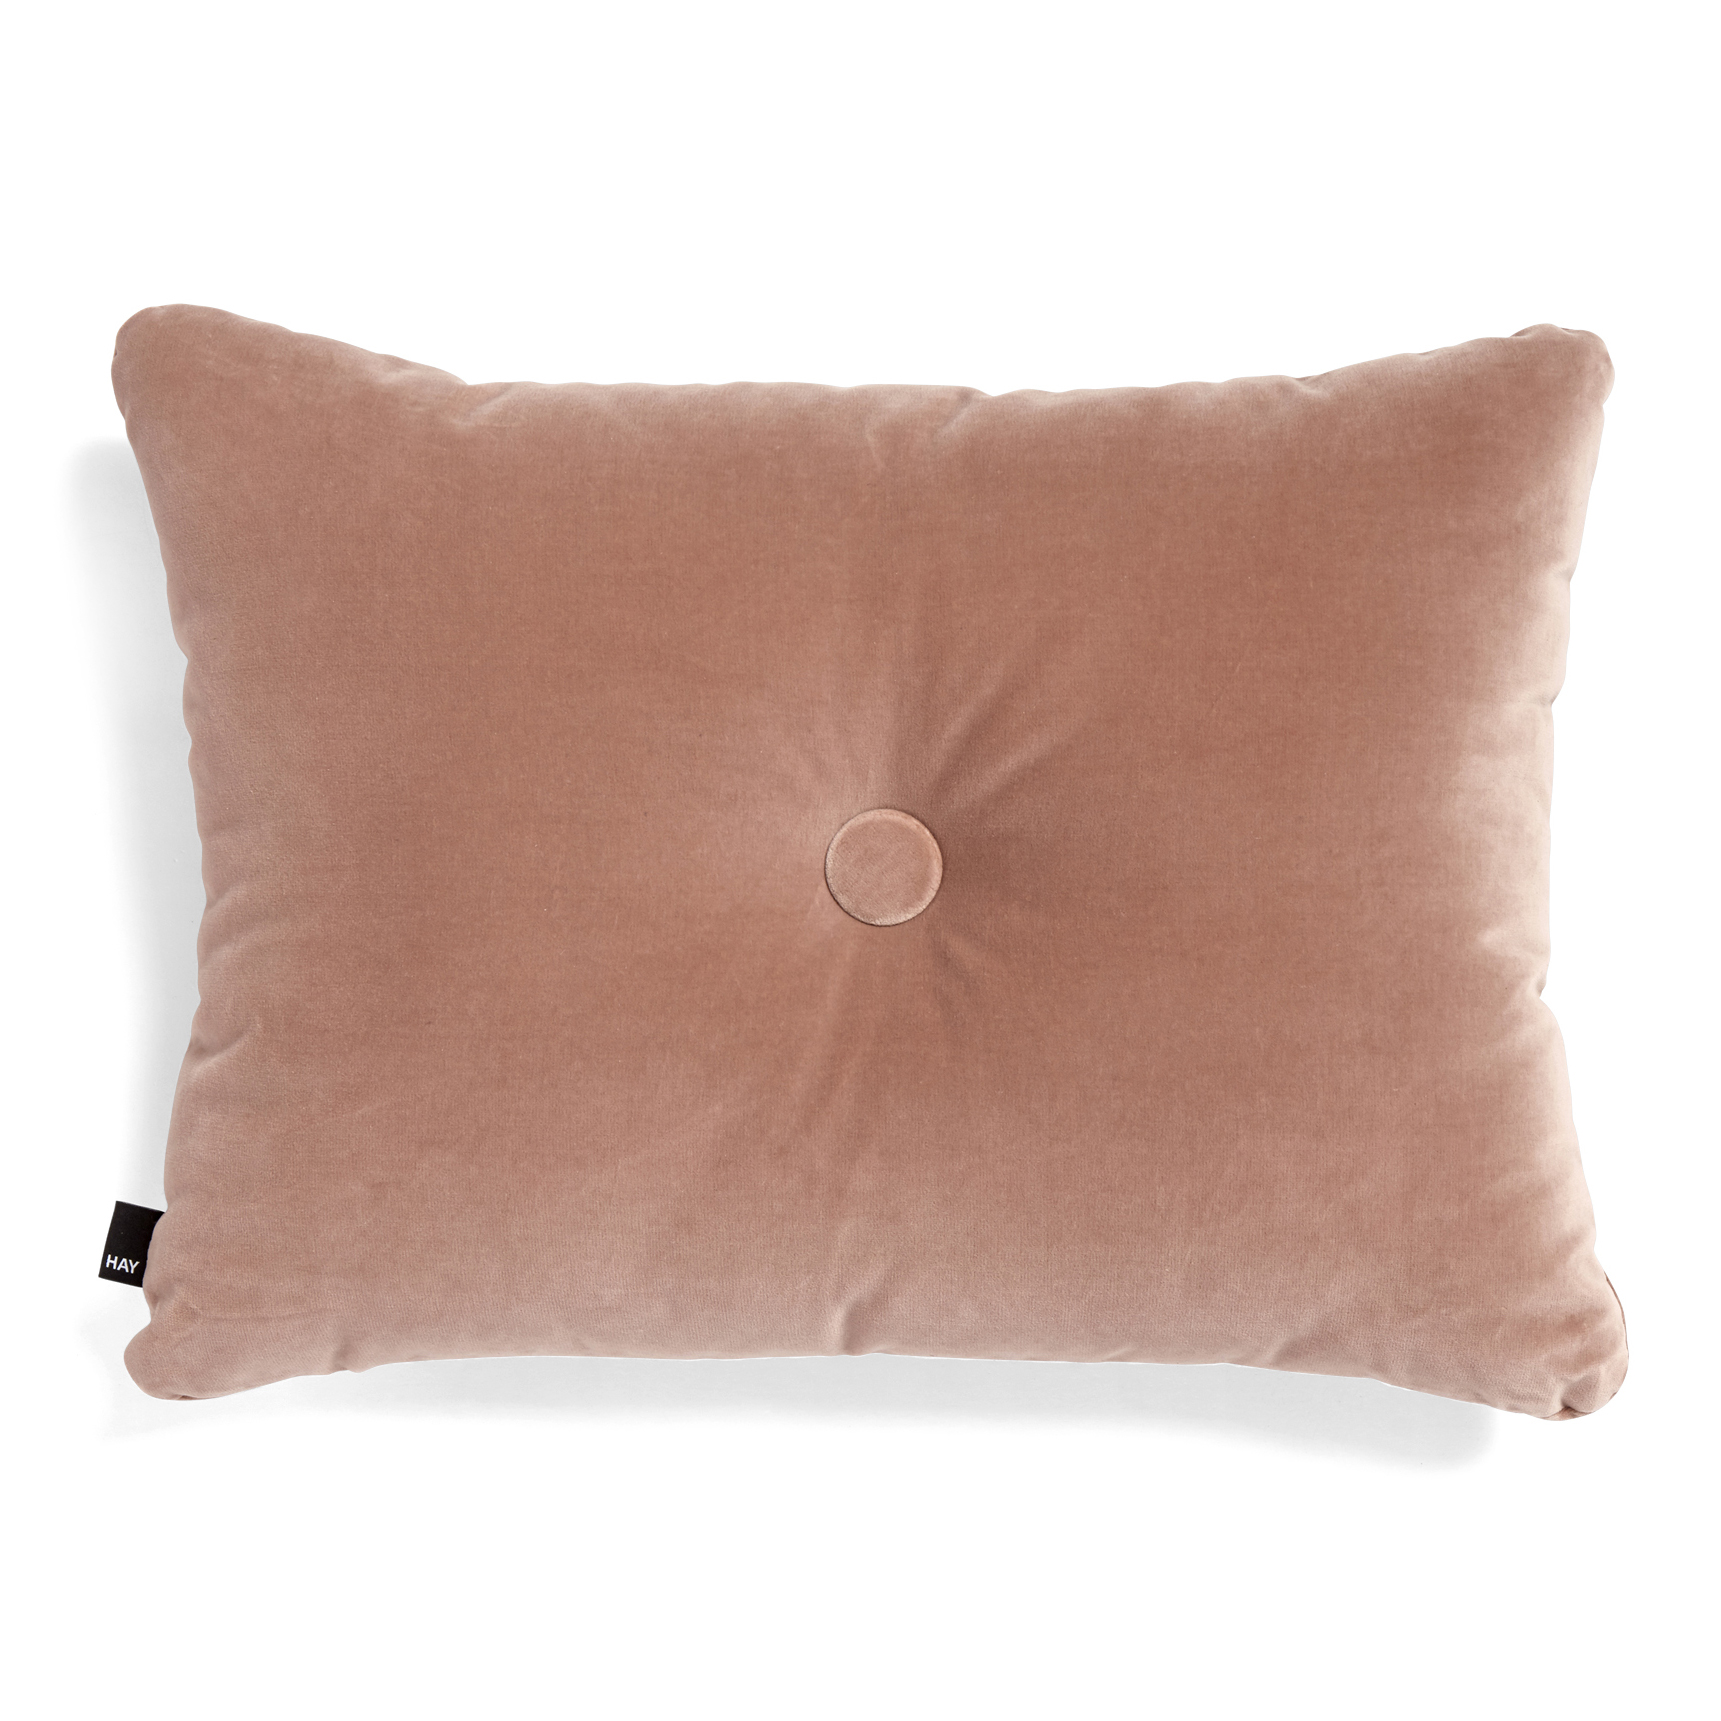 Dot Cushion Soft 1 Dot cushion 45x60 cm, rose